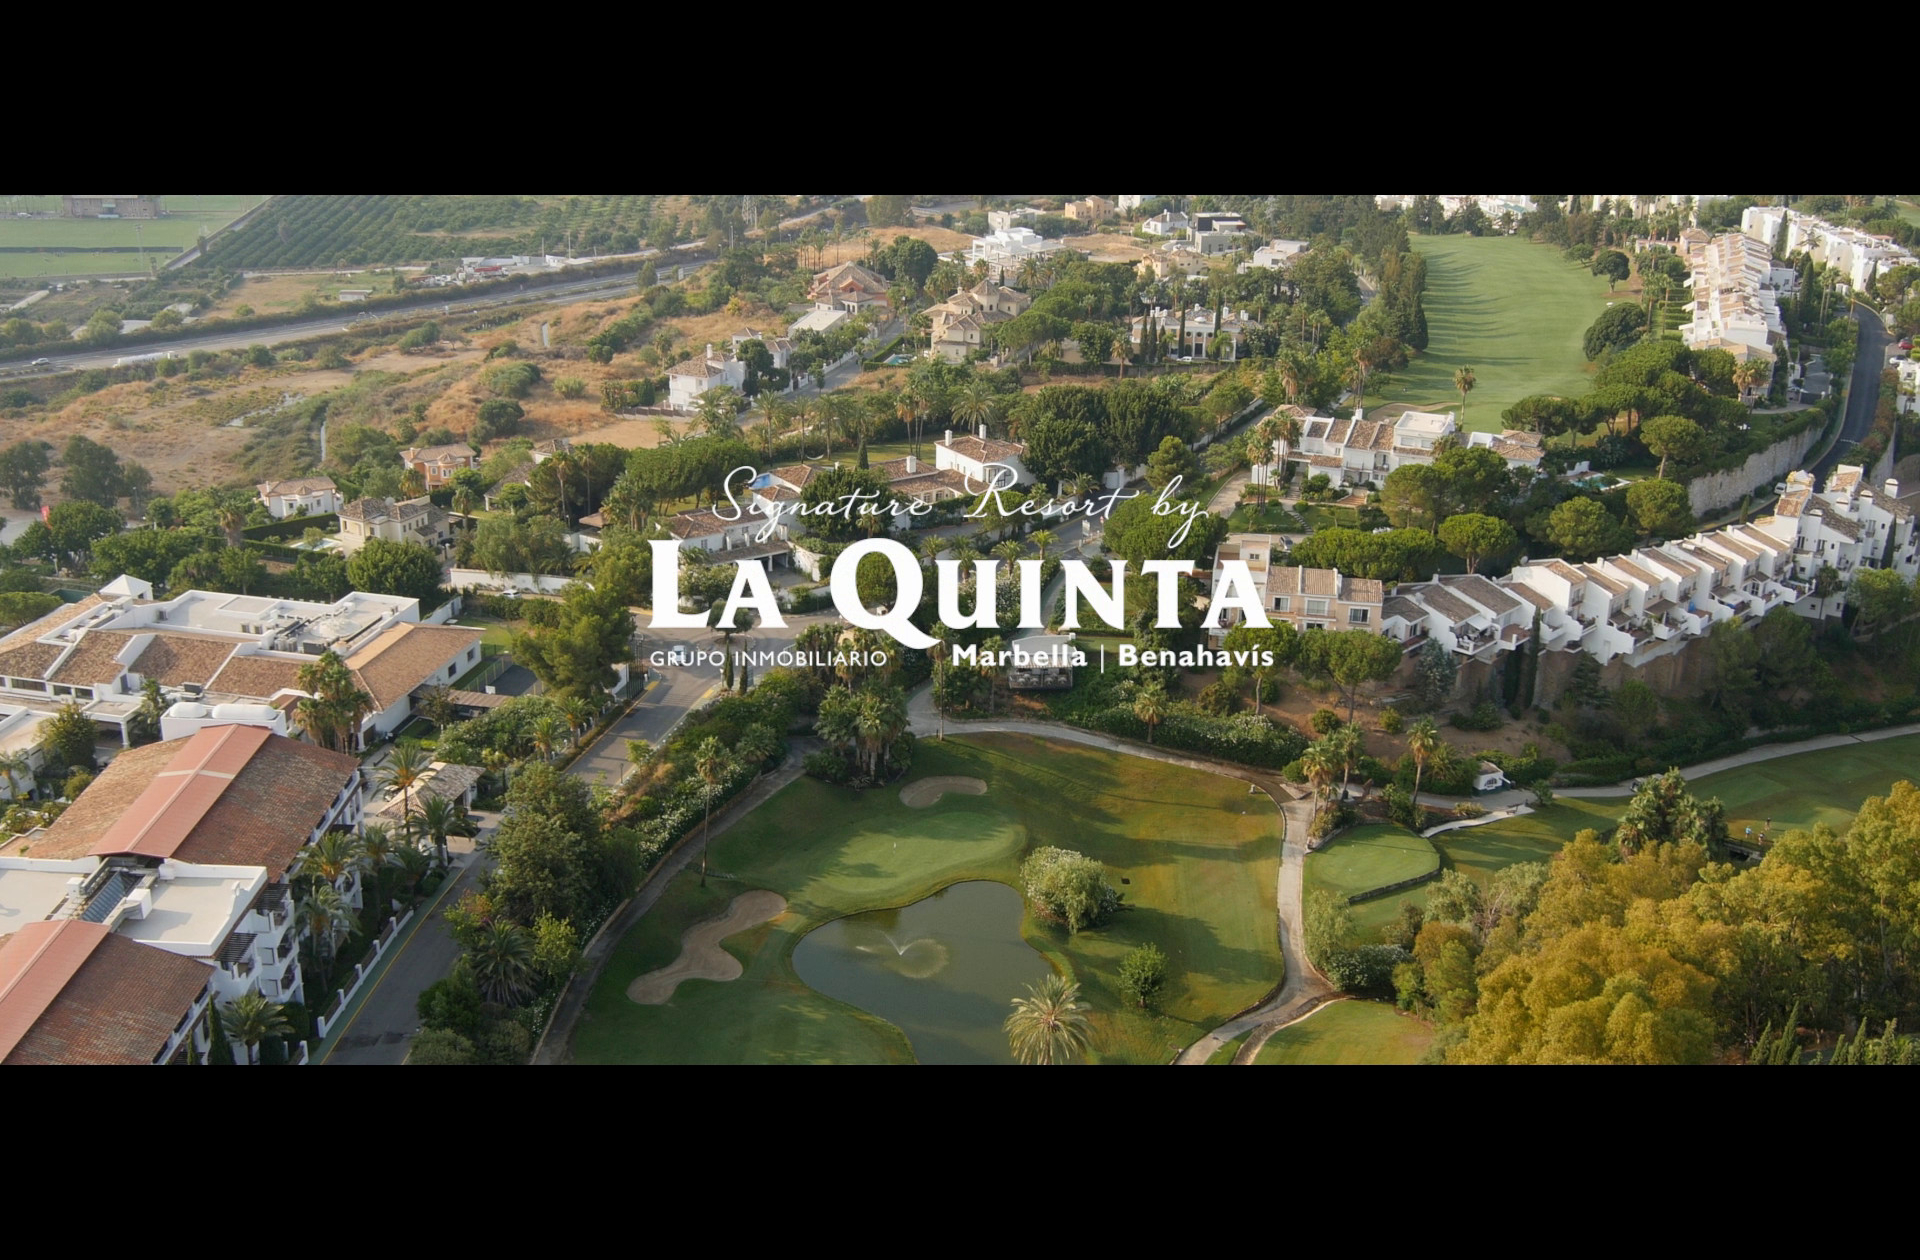 Preview image for the video "Real de La Quinta - LA QUINTA - Español (Actualización: Junio 2019)".